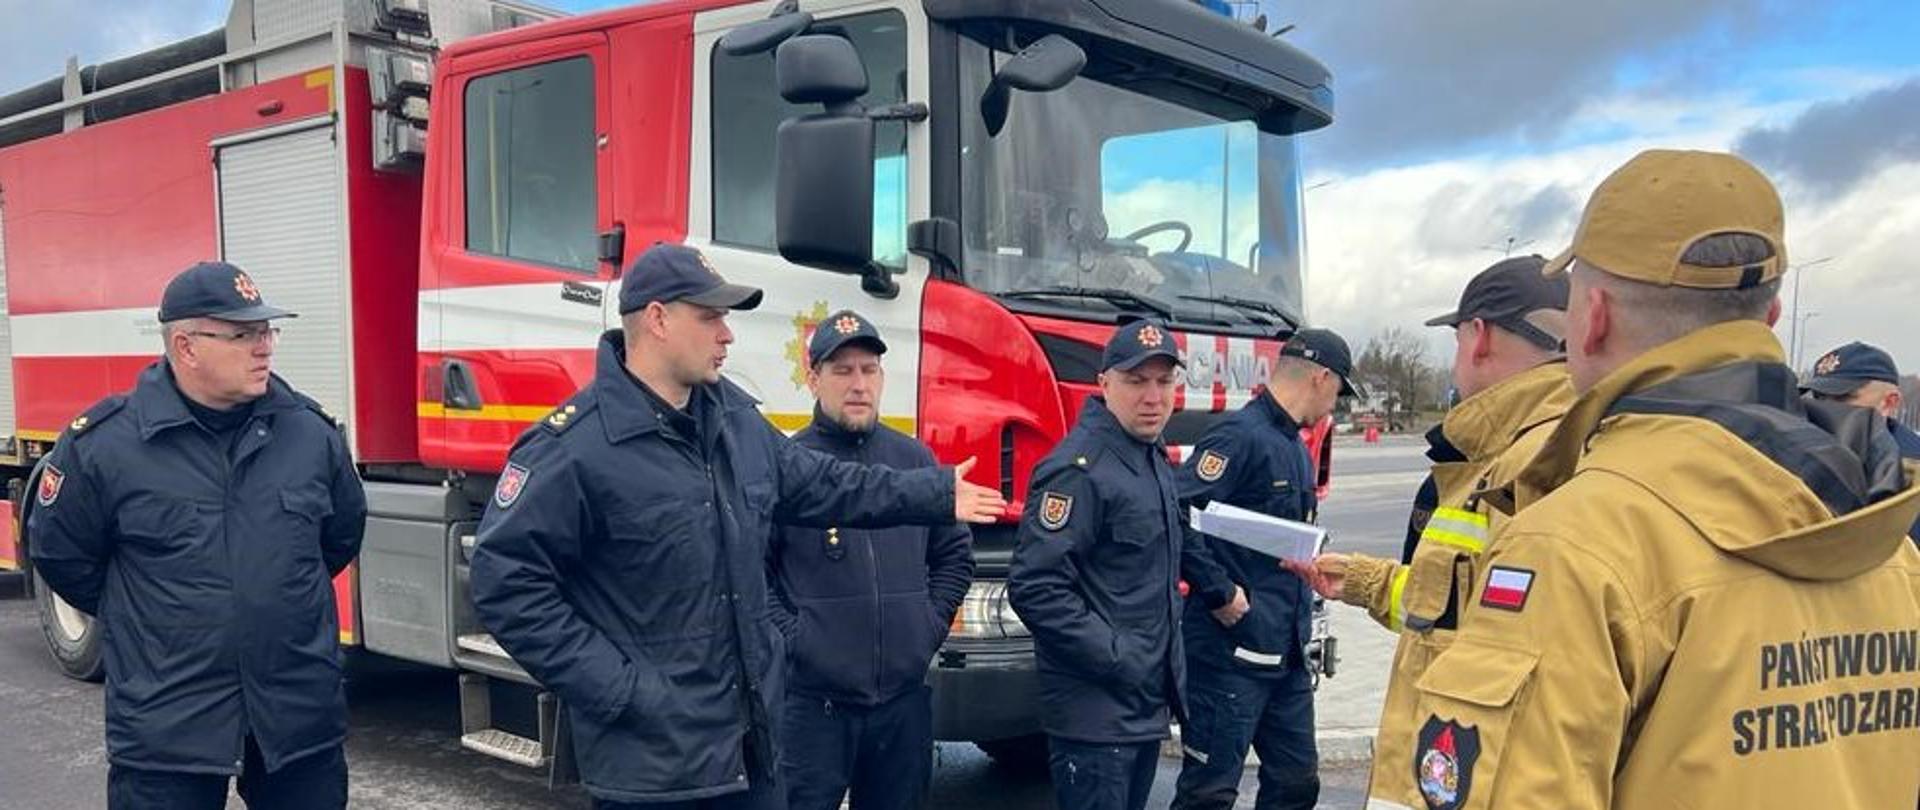 Grupa strażaków z Polski i Litwy stoi przy samochodzie rat-gaś rozmawiając podczas ćwiczeń. Jeden ze strażaków podaje drugiemu dokument